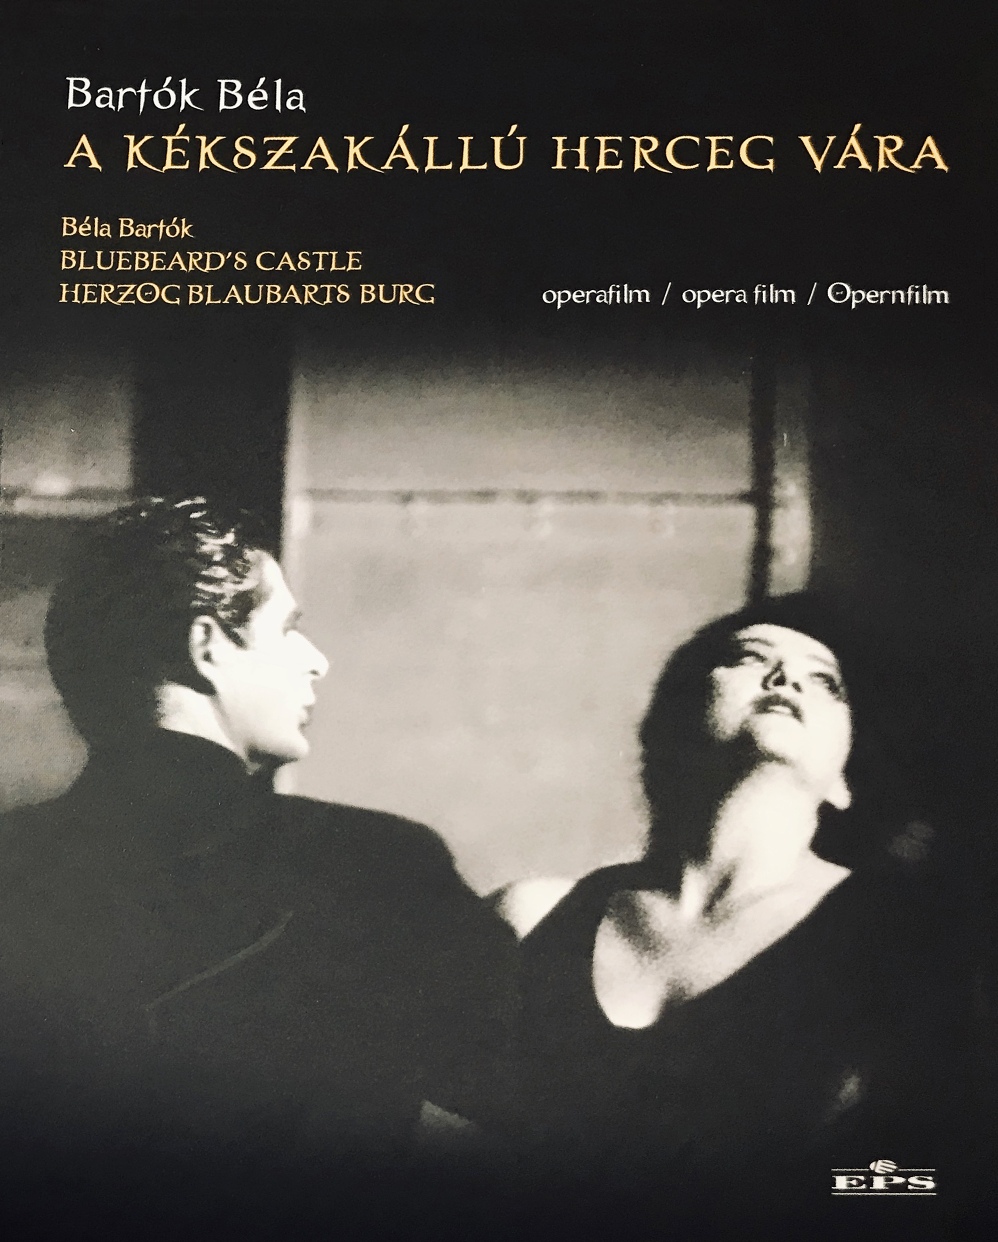 Bartók Béla - A KÉKSZAKÁLLÚ HERCEG VÁRA (BLUEBEARD'S CASTLE) DVD KOVÁCS ISTVÁN, KOLONITS KLÁRA, JORDÁN TAMÁS